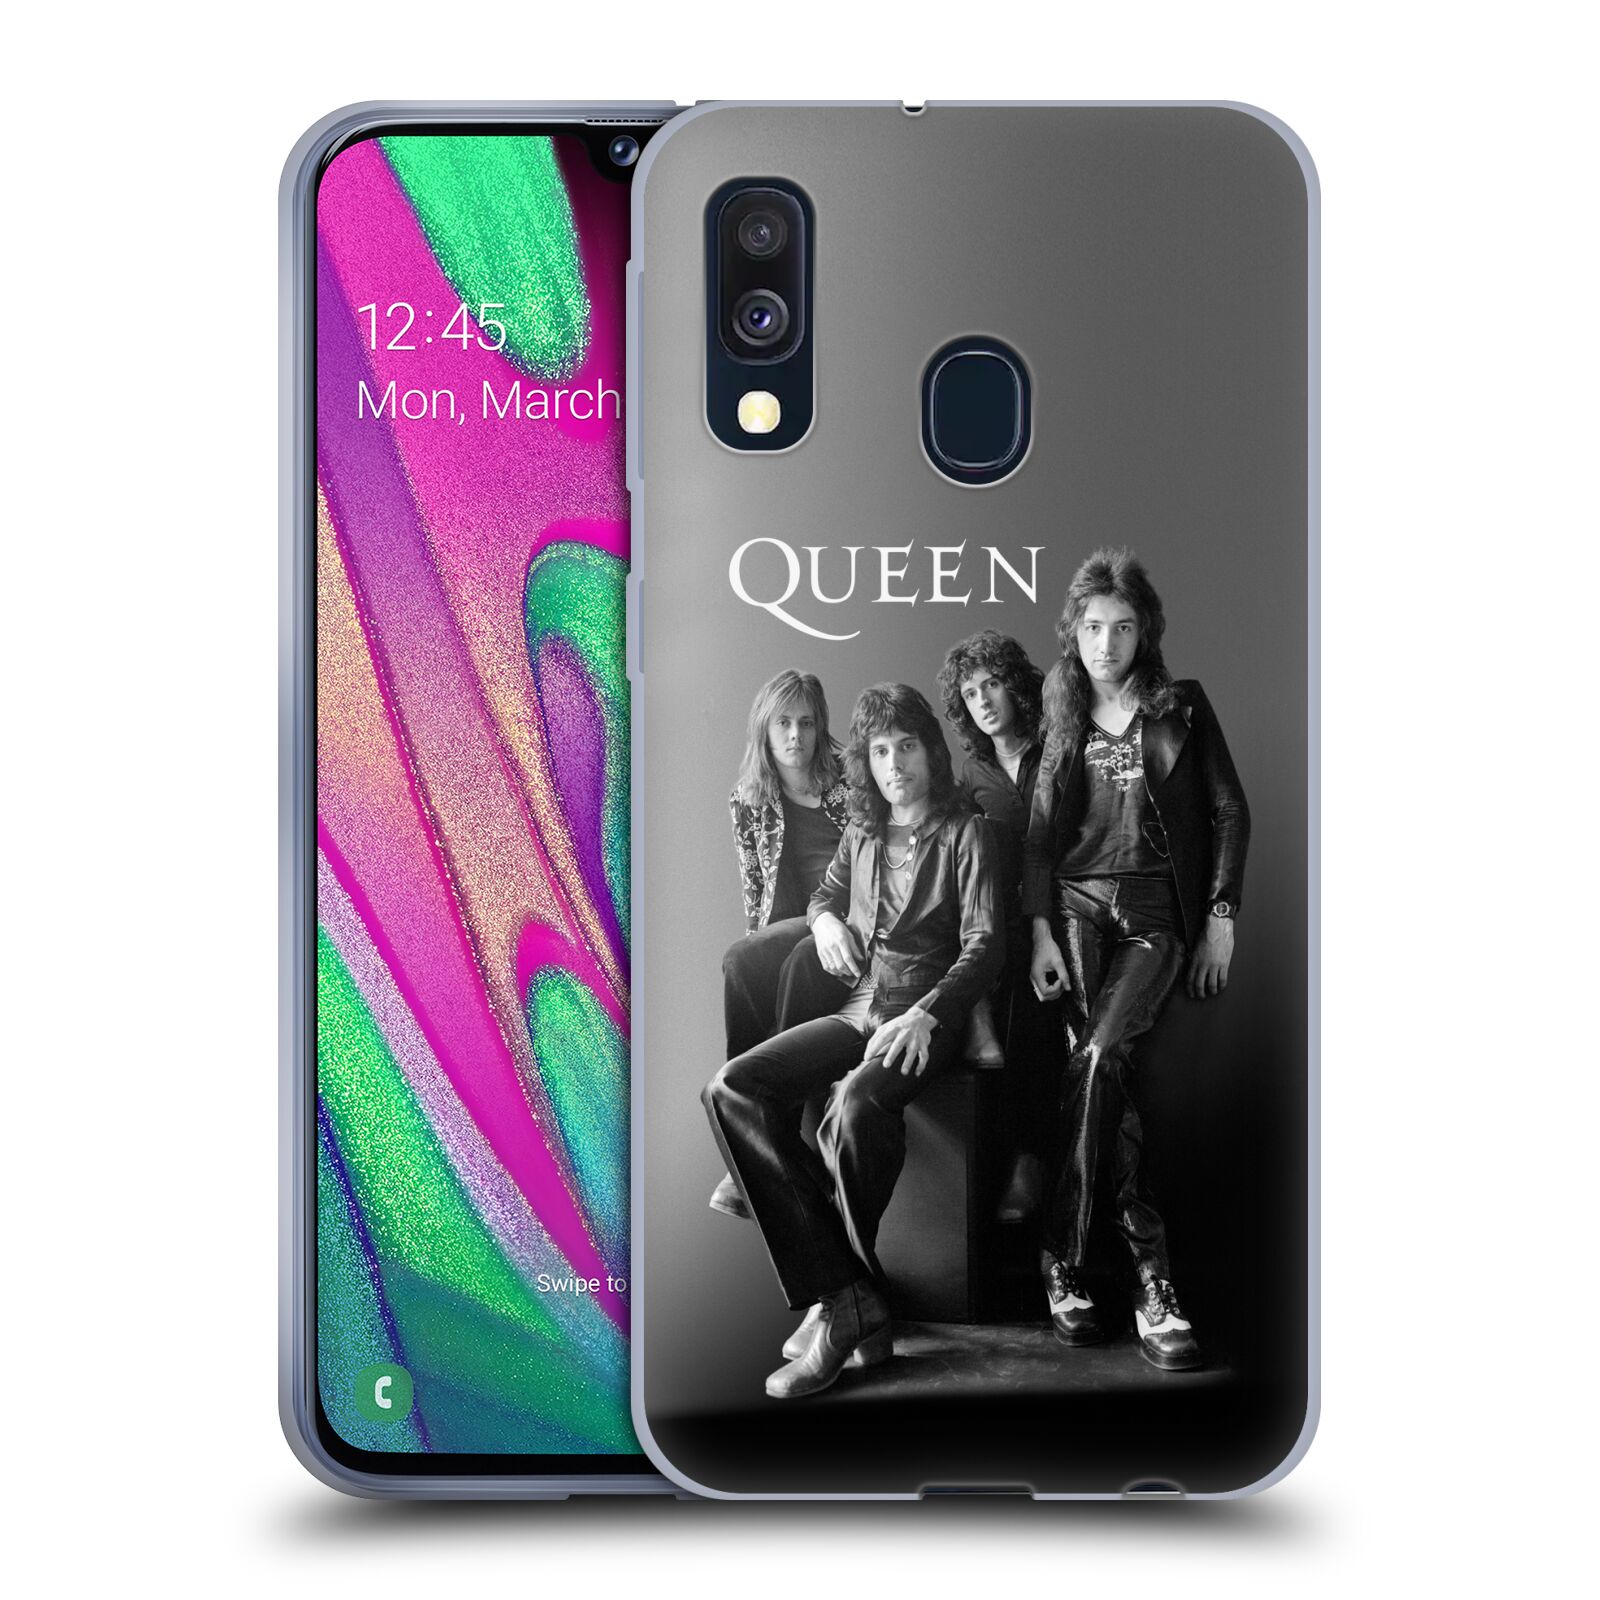 Silikonové pouzdro na mobil Samsung Galaxy A40 - Head Case - Queen - Skupina (Silikonový kryt, obal, pouzdro na mobilní telefon Samsung Galaxy A40 A405F Dual SIM s motivem Queen - Skupina)